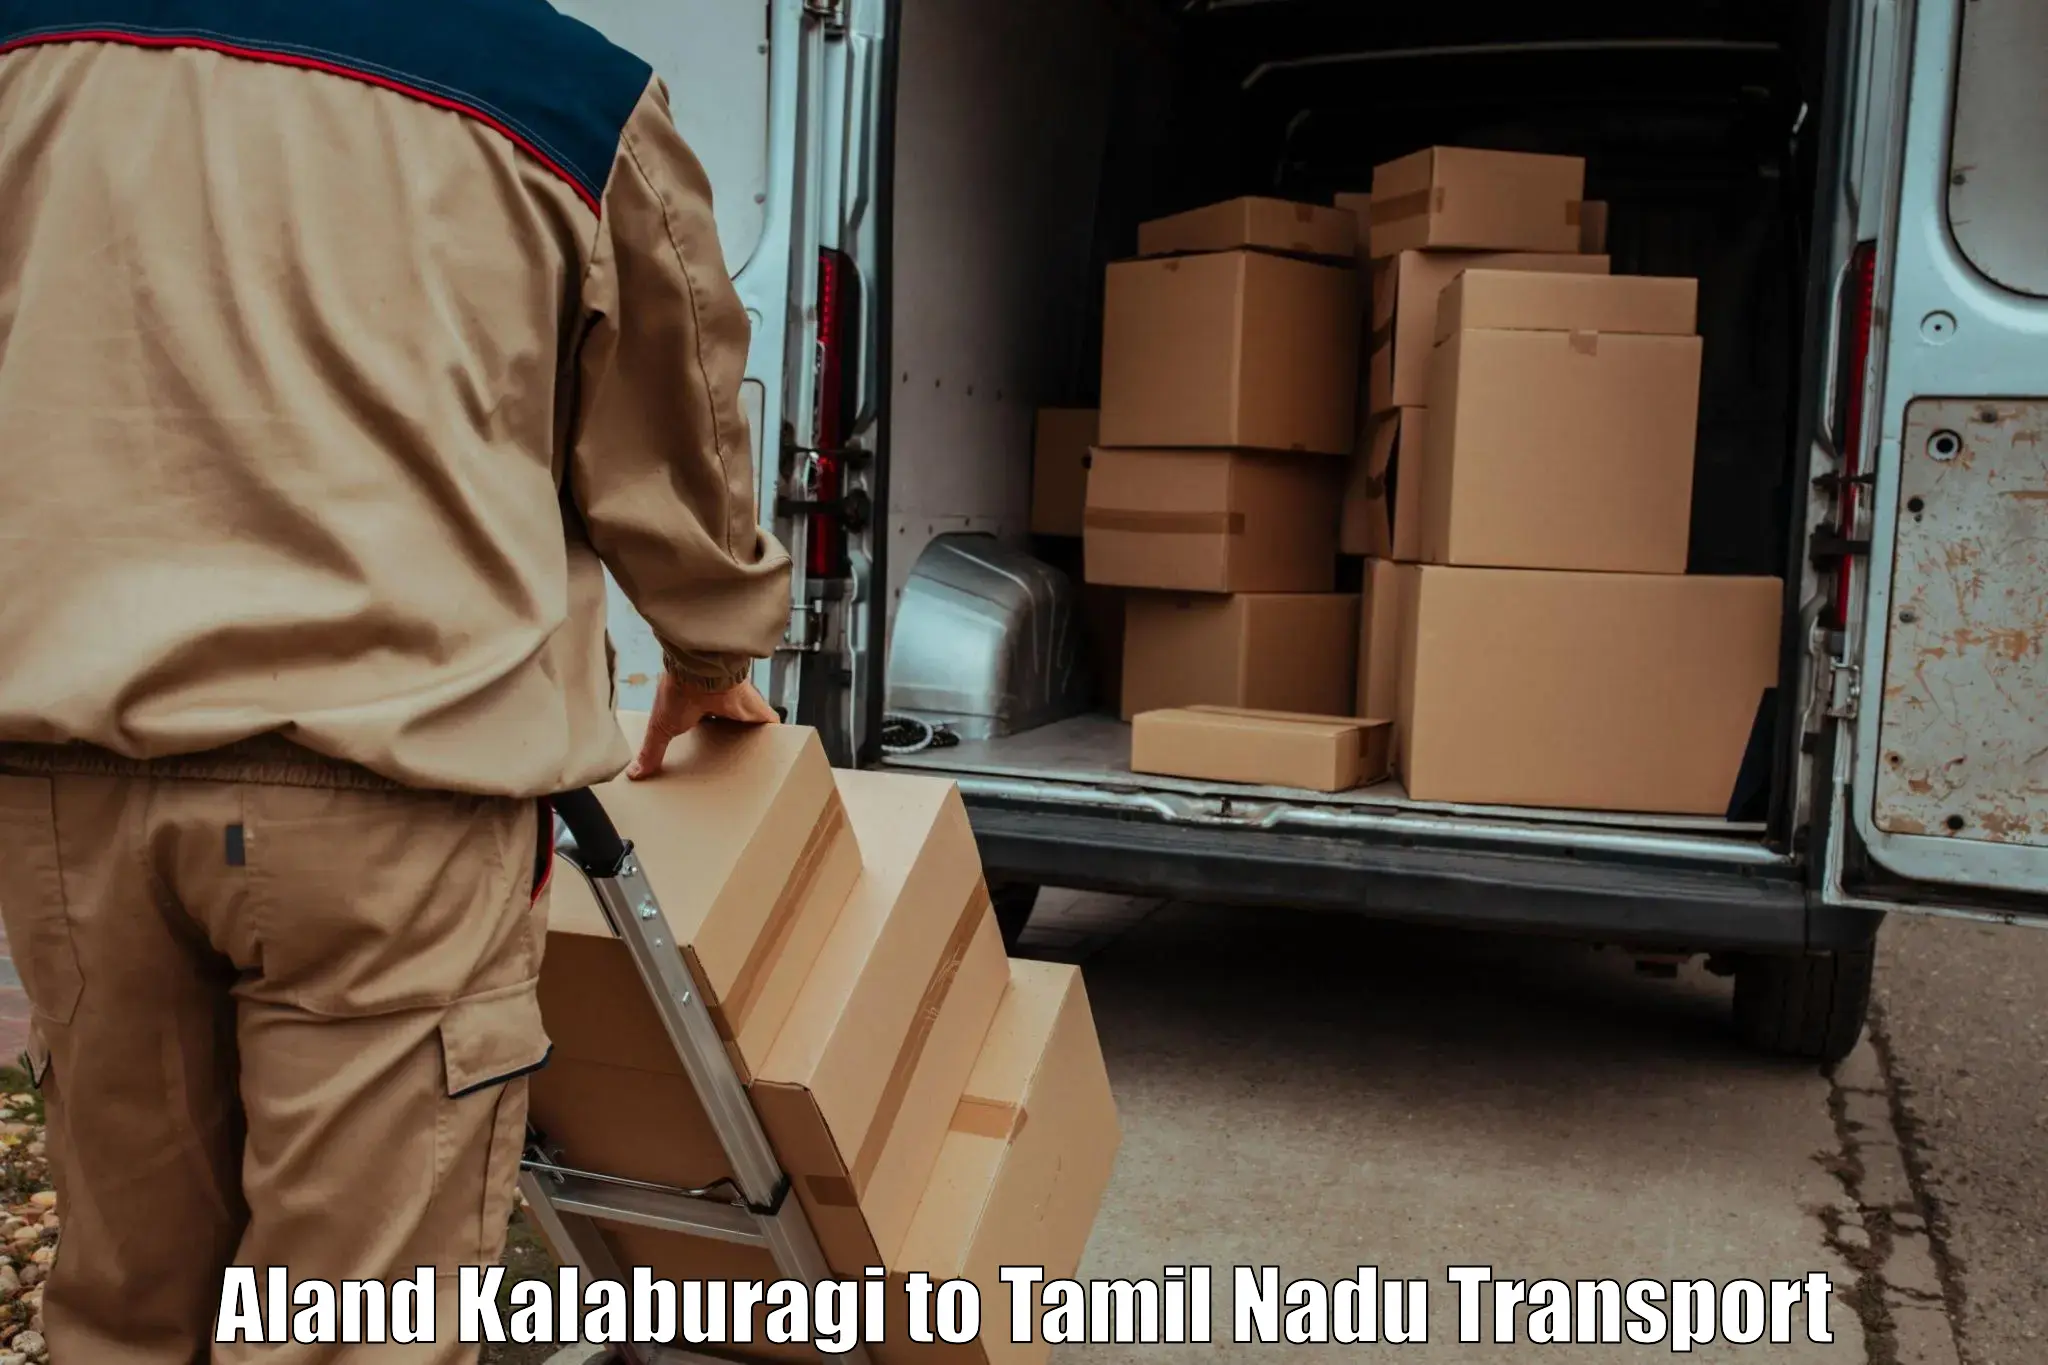 Shipping partner Aland Kalaburagi to Vedasandur